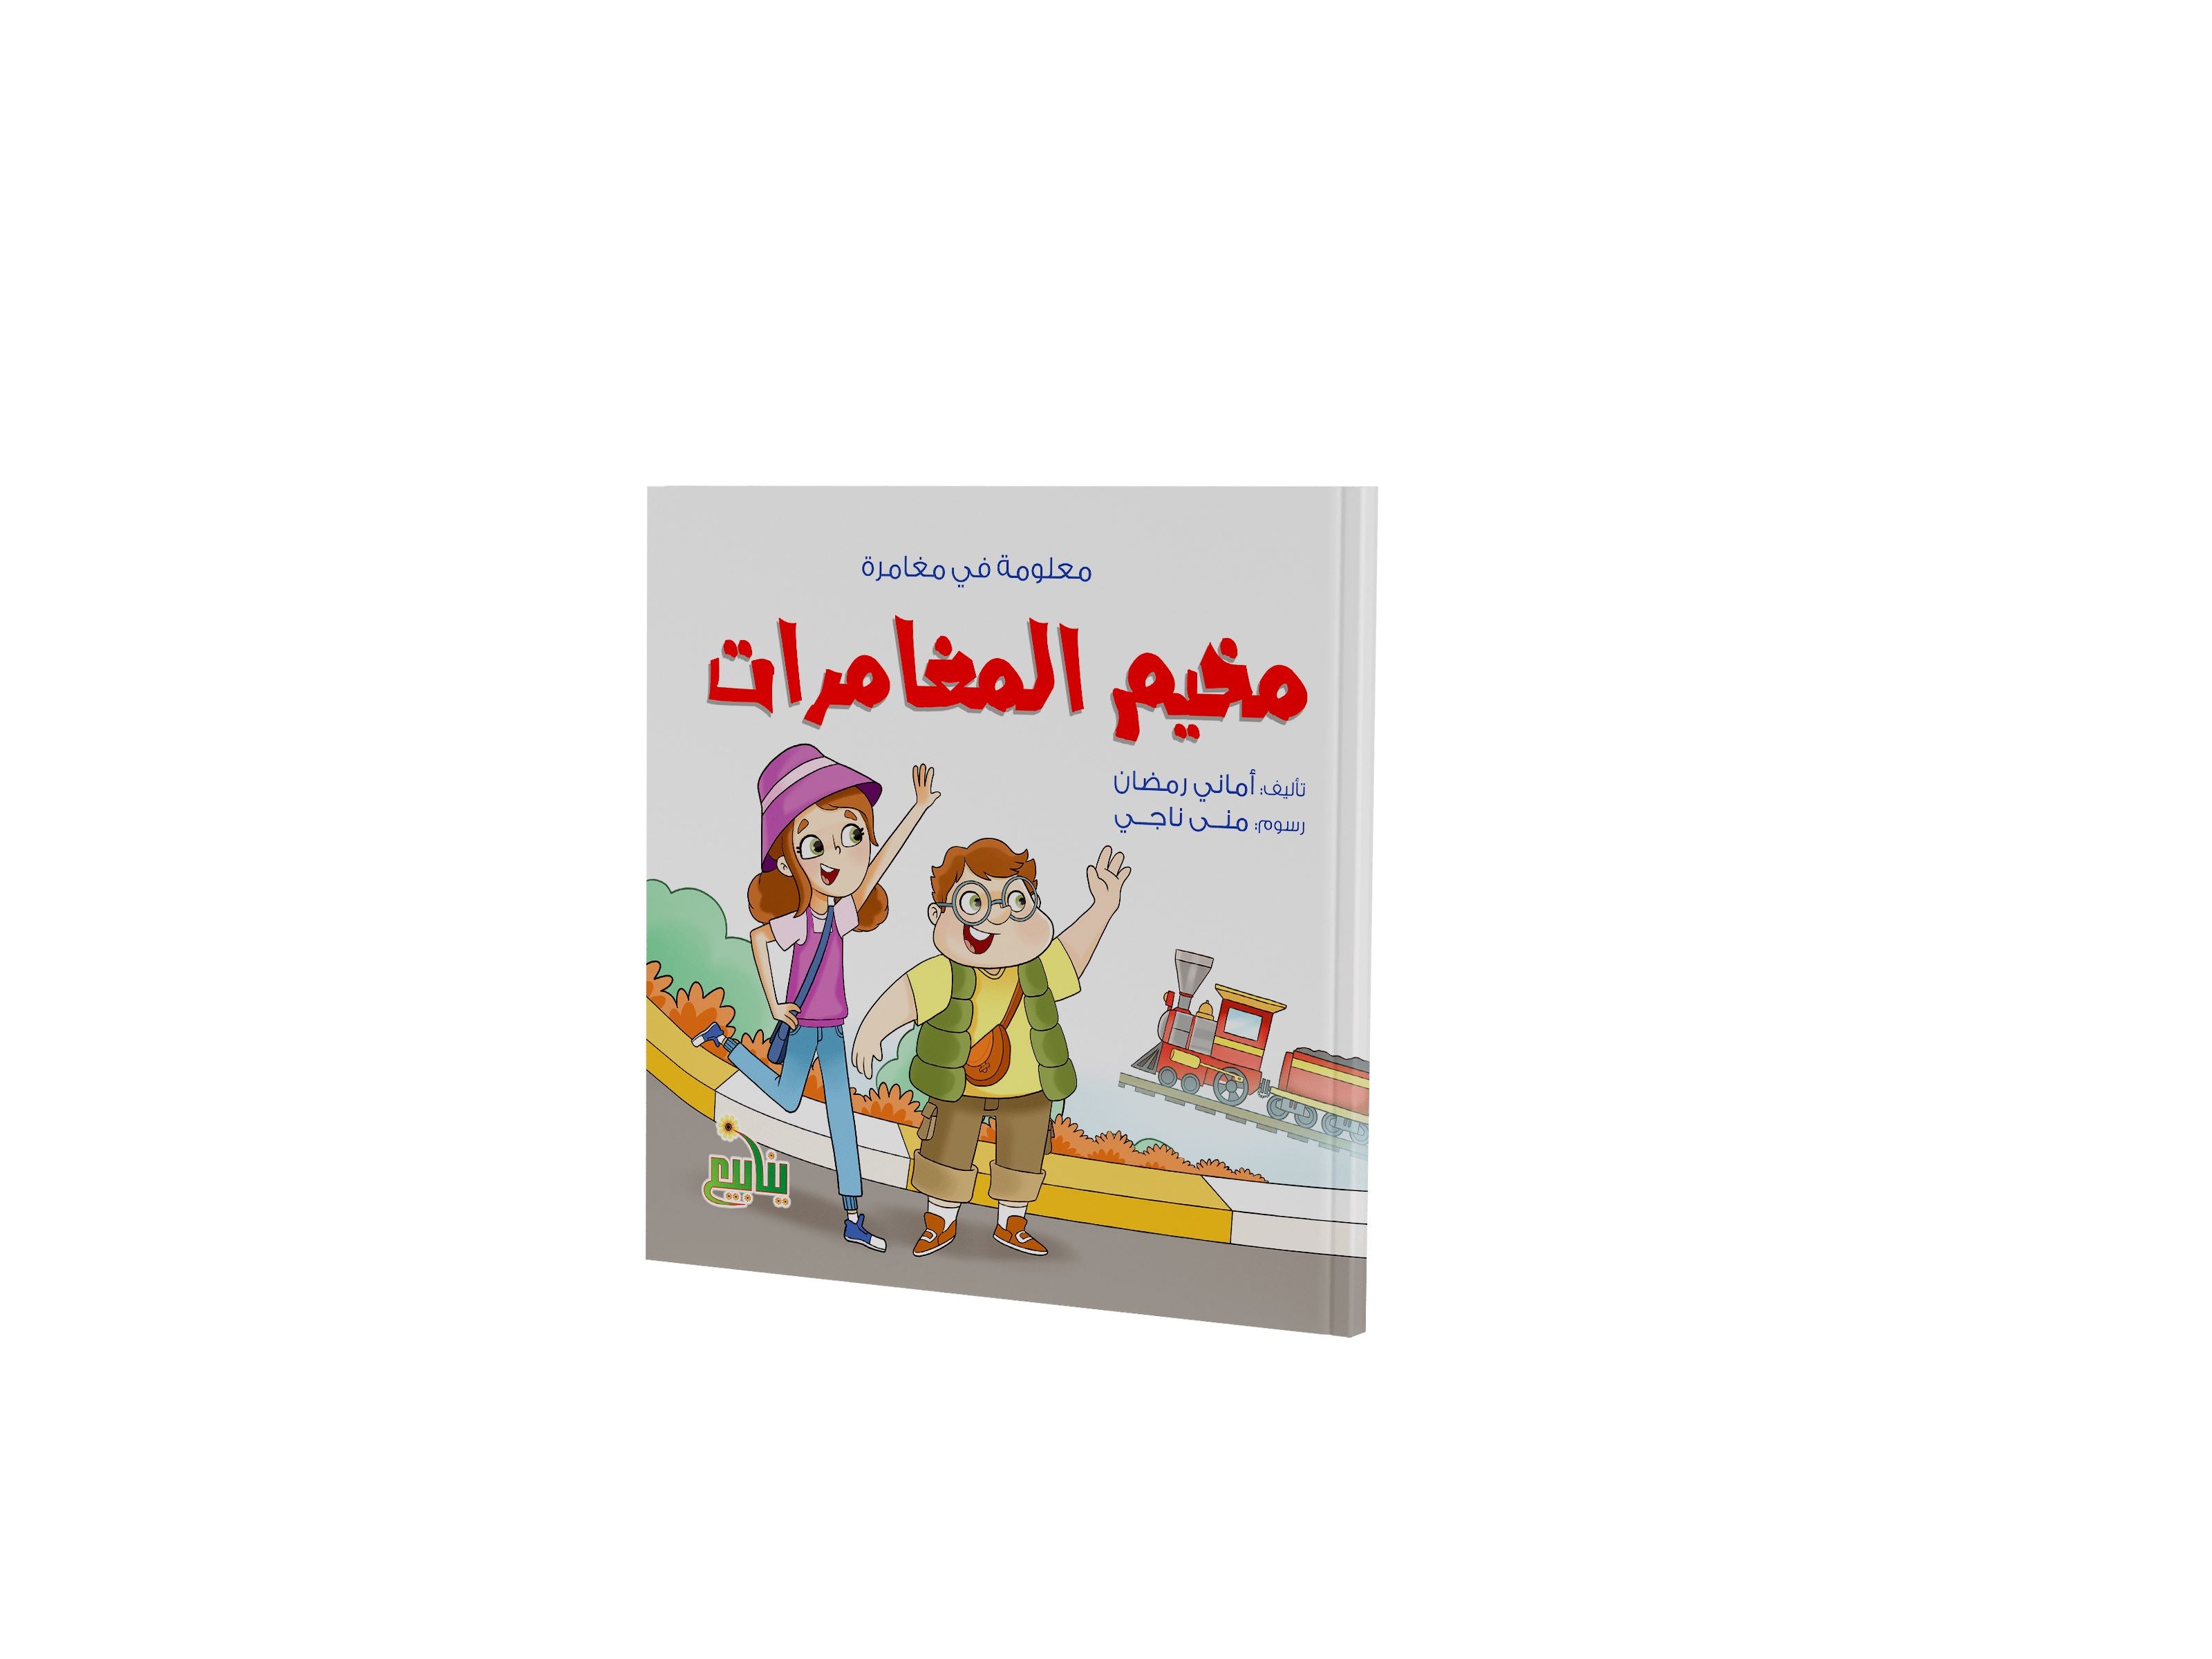 سلسة معلومة في مغامرة كتب أطفال أماني رمضان